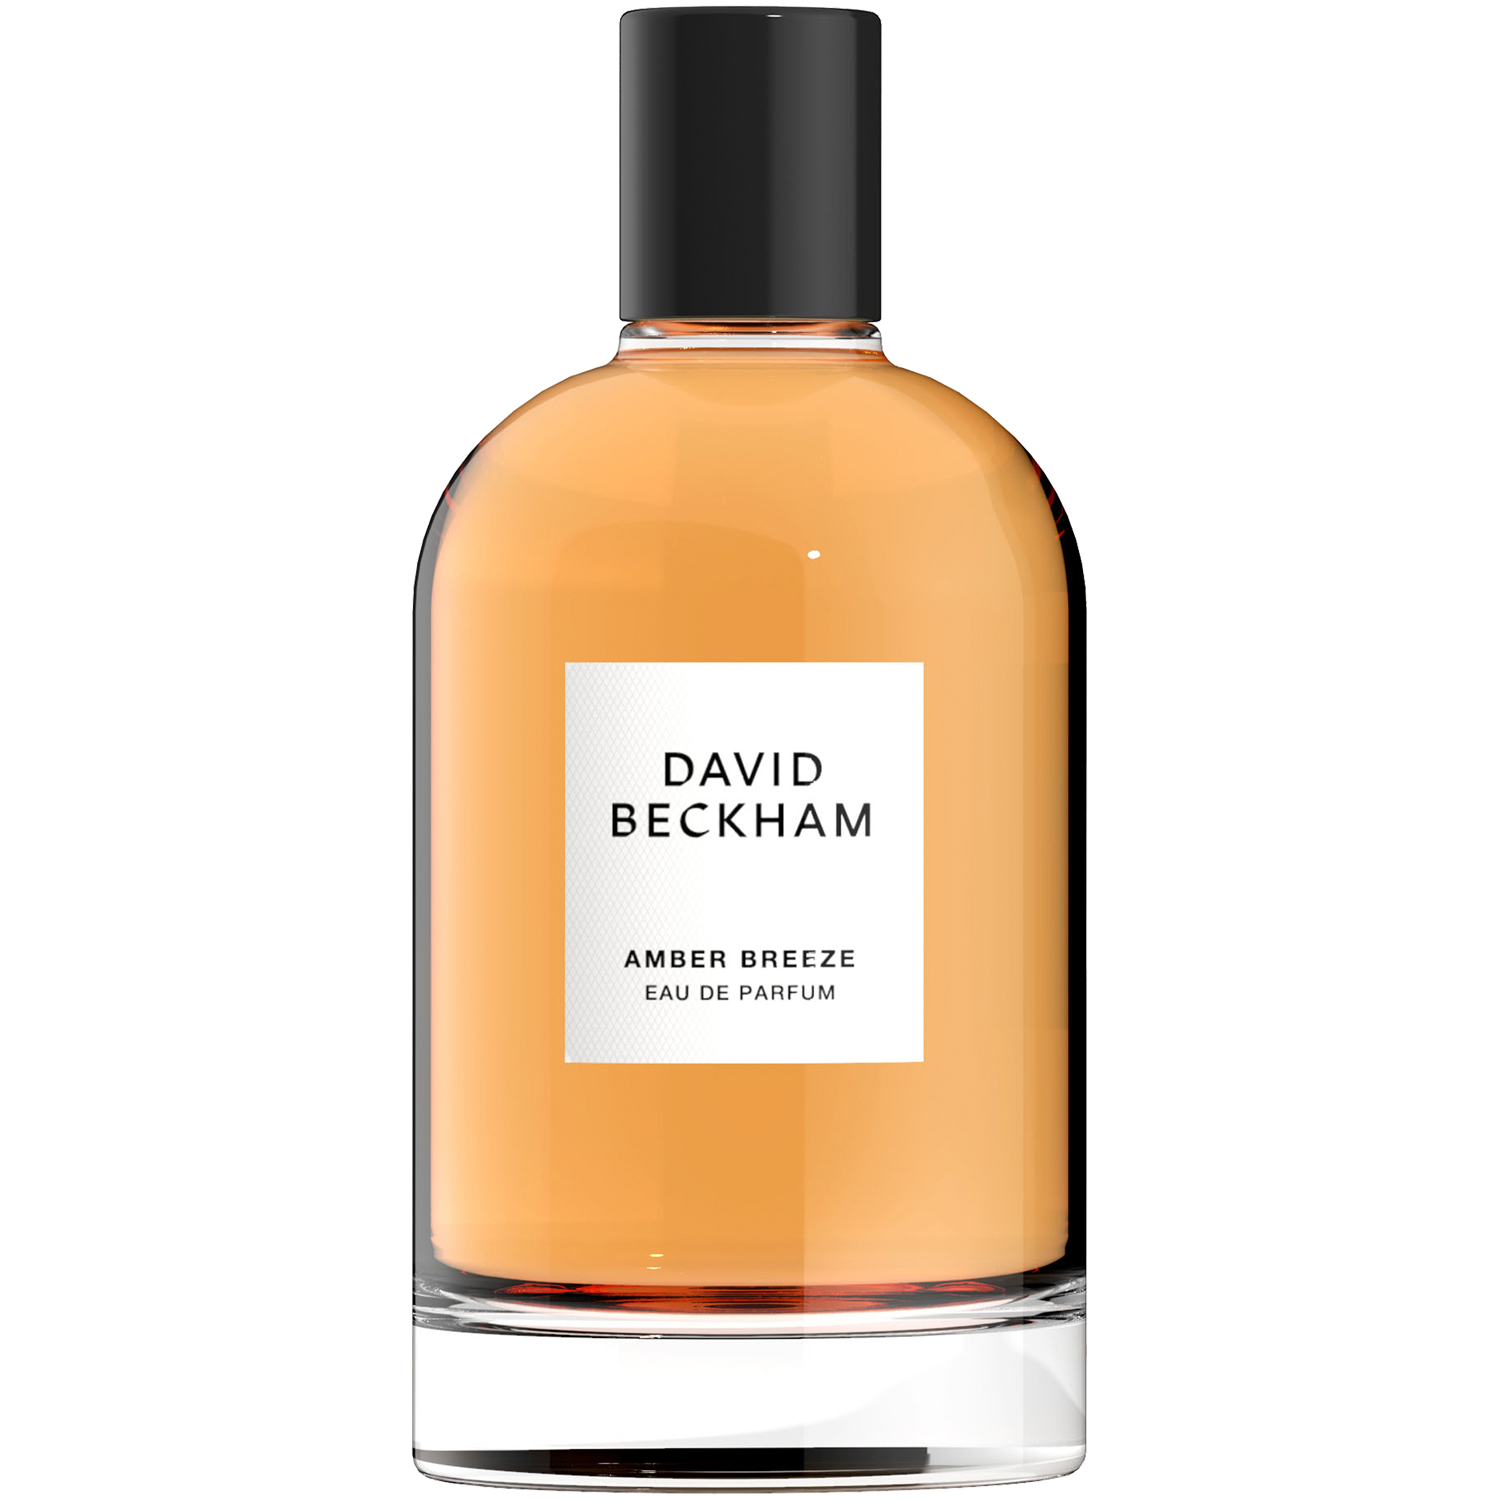 David Beckham Amber Breeze парфюмированная вода для мужчин, 100 мл